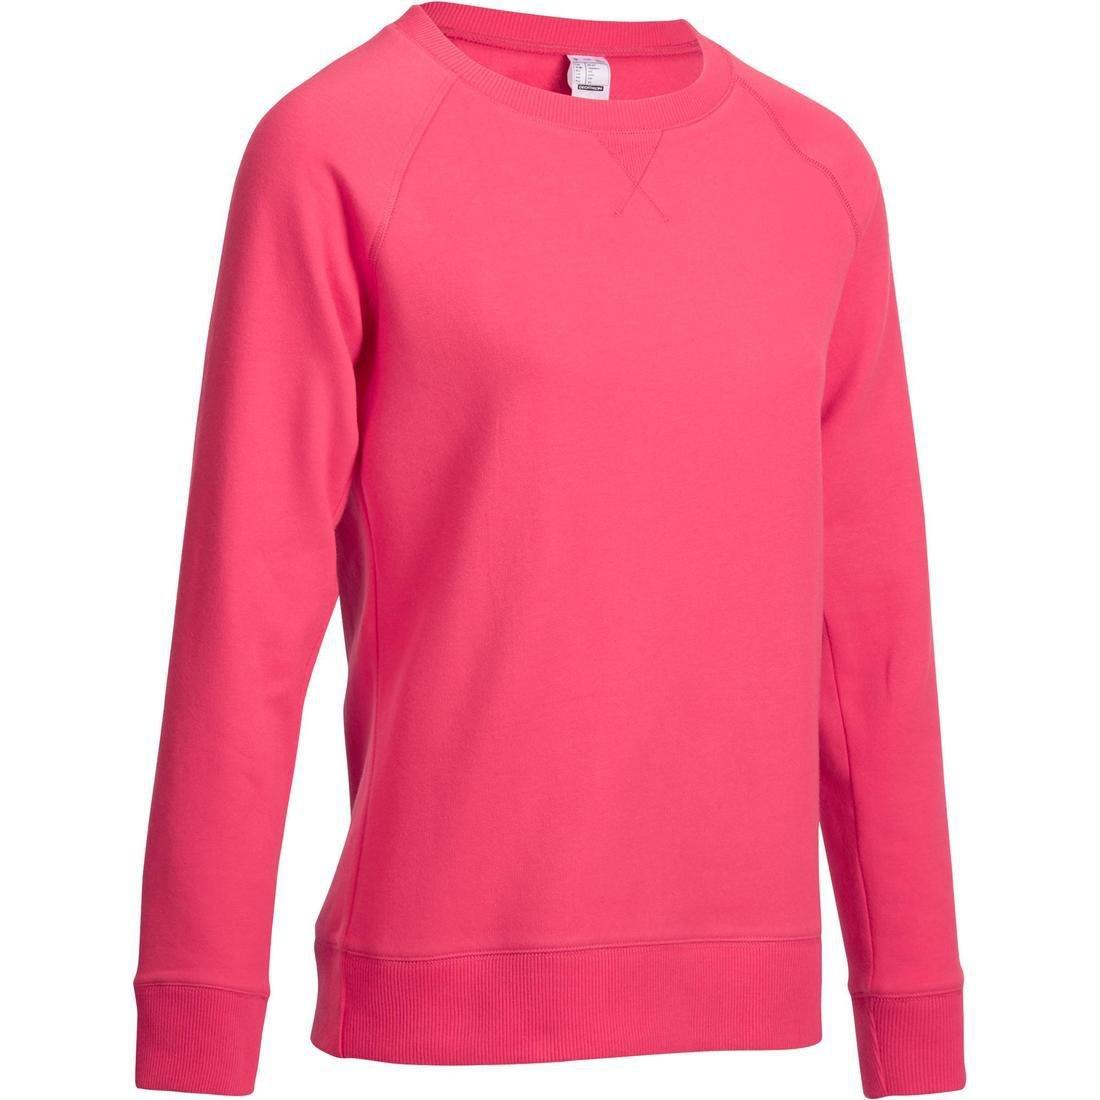 NYAMBA - Women's Crew Neck Gym & Pilates Sweatshirt - Pink